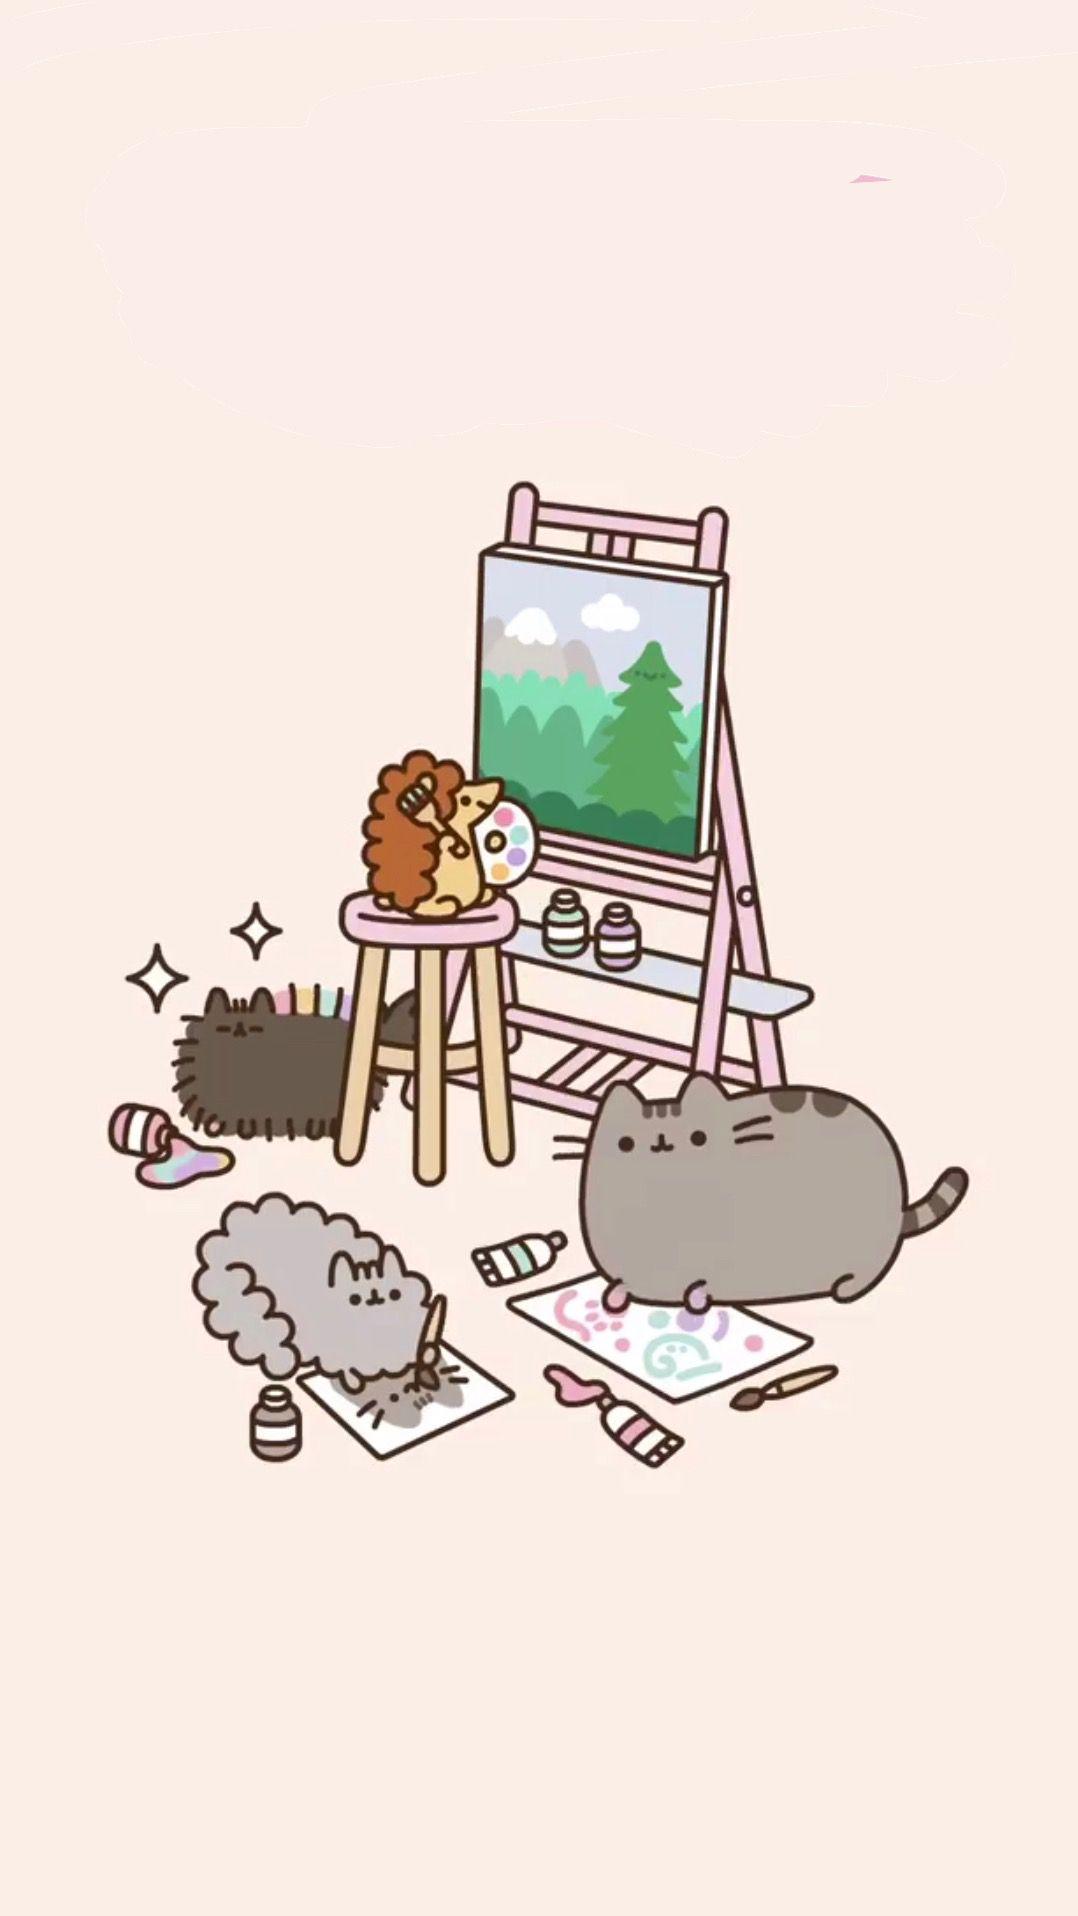 pusheen painting wallpaper ♡. Pusheen cute, Cute drawings, Pusheen cat